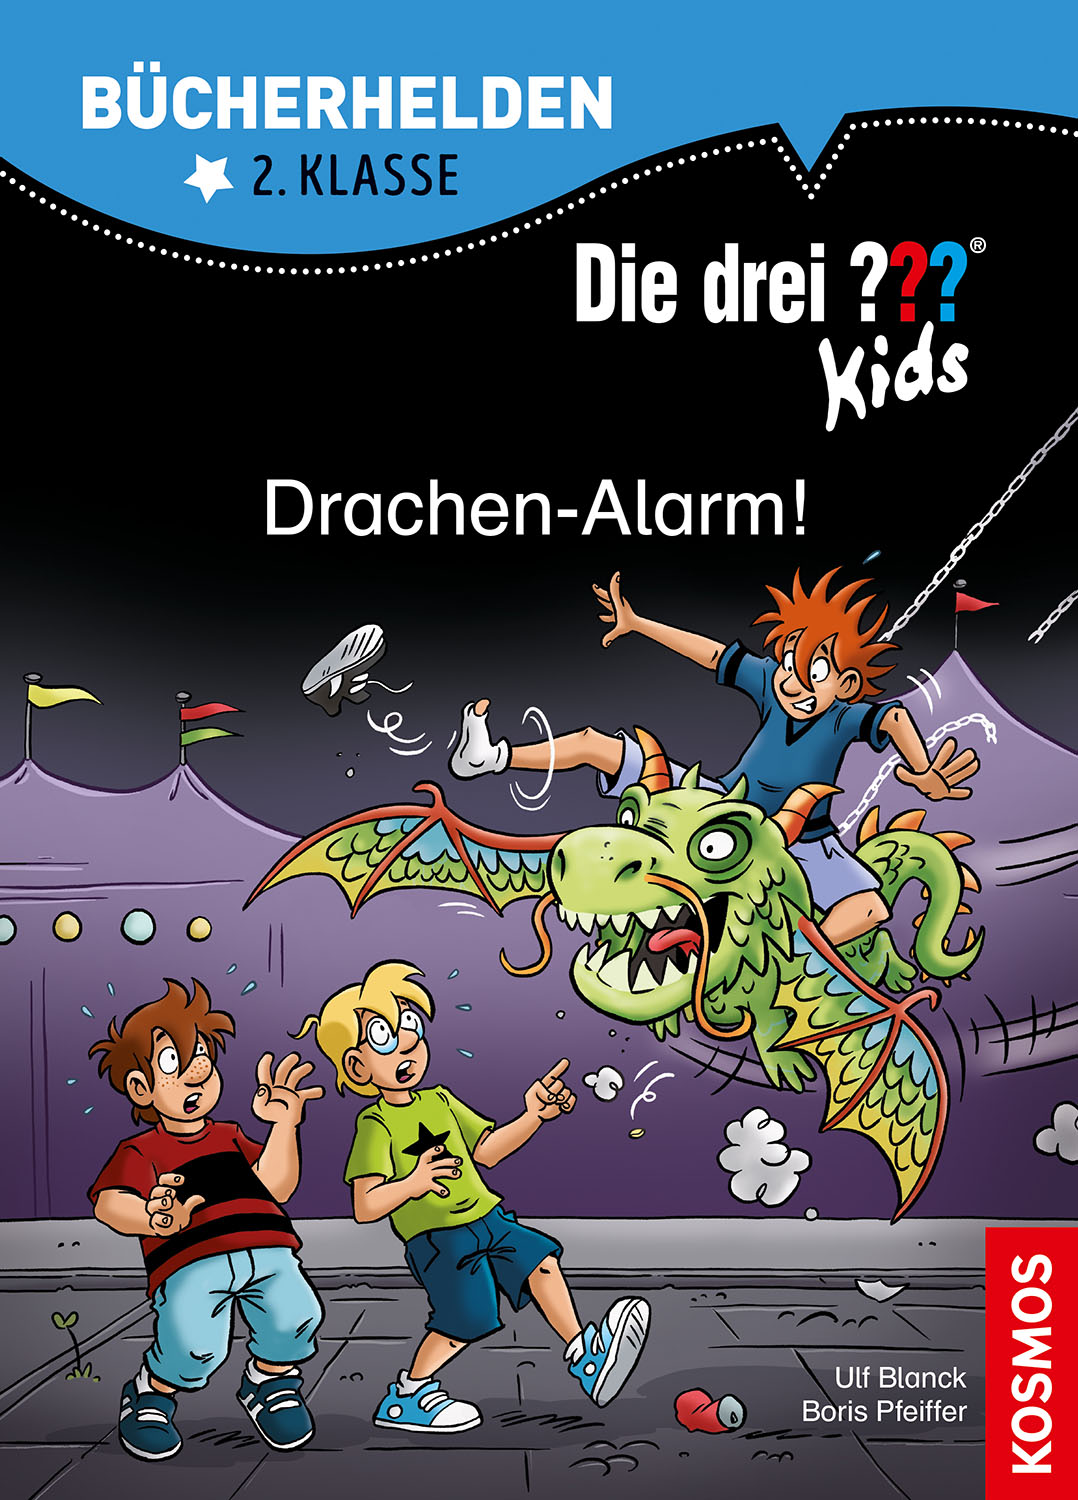 Die Drei ??? (Fragezeichen) Kids, Buch-Special: Bücherhelden 2. Klasse, Drachen-Alarm!